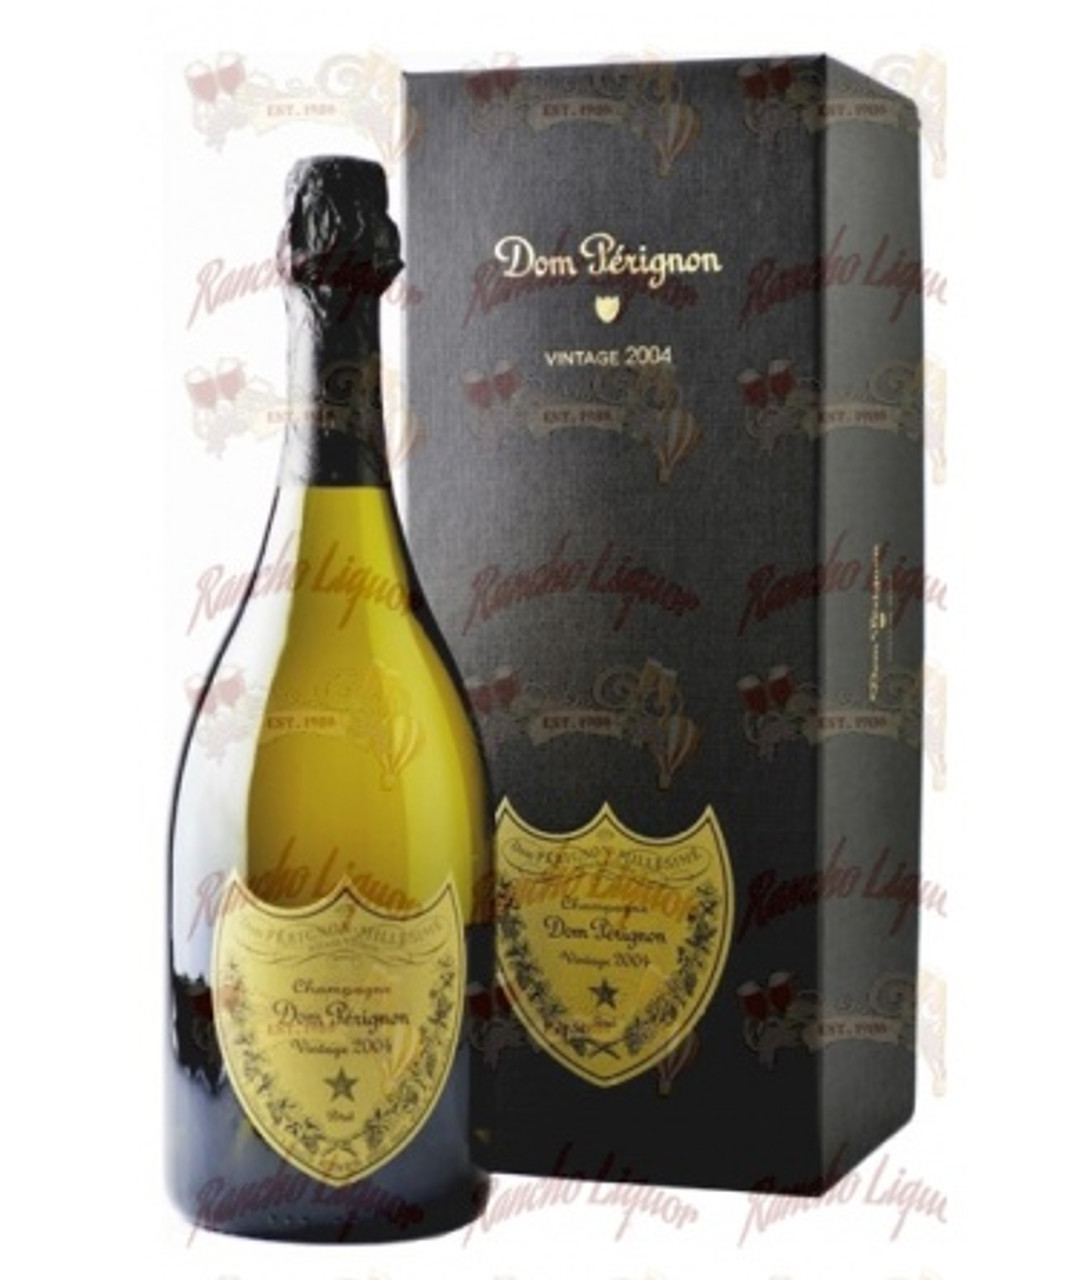 2004 Moet Chandon Dom Perignon Champagne Blend